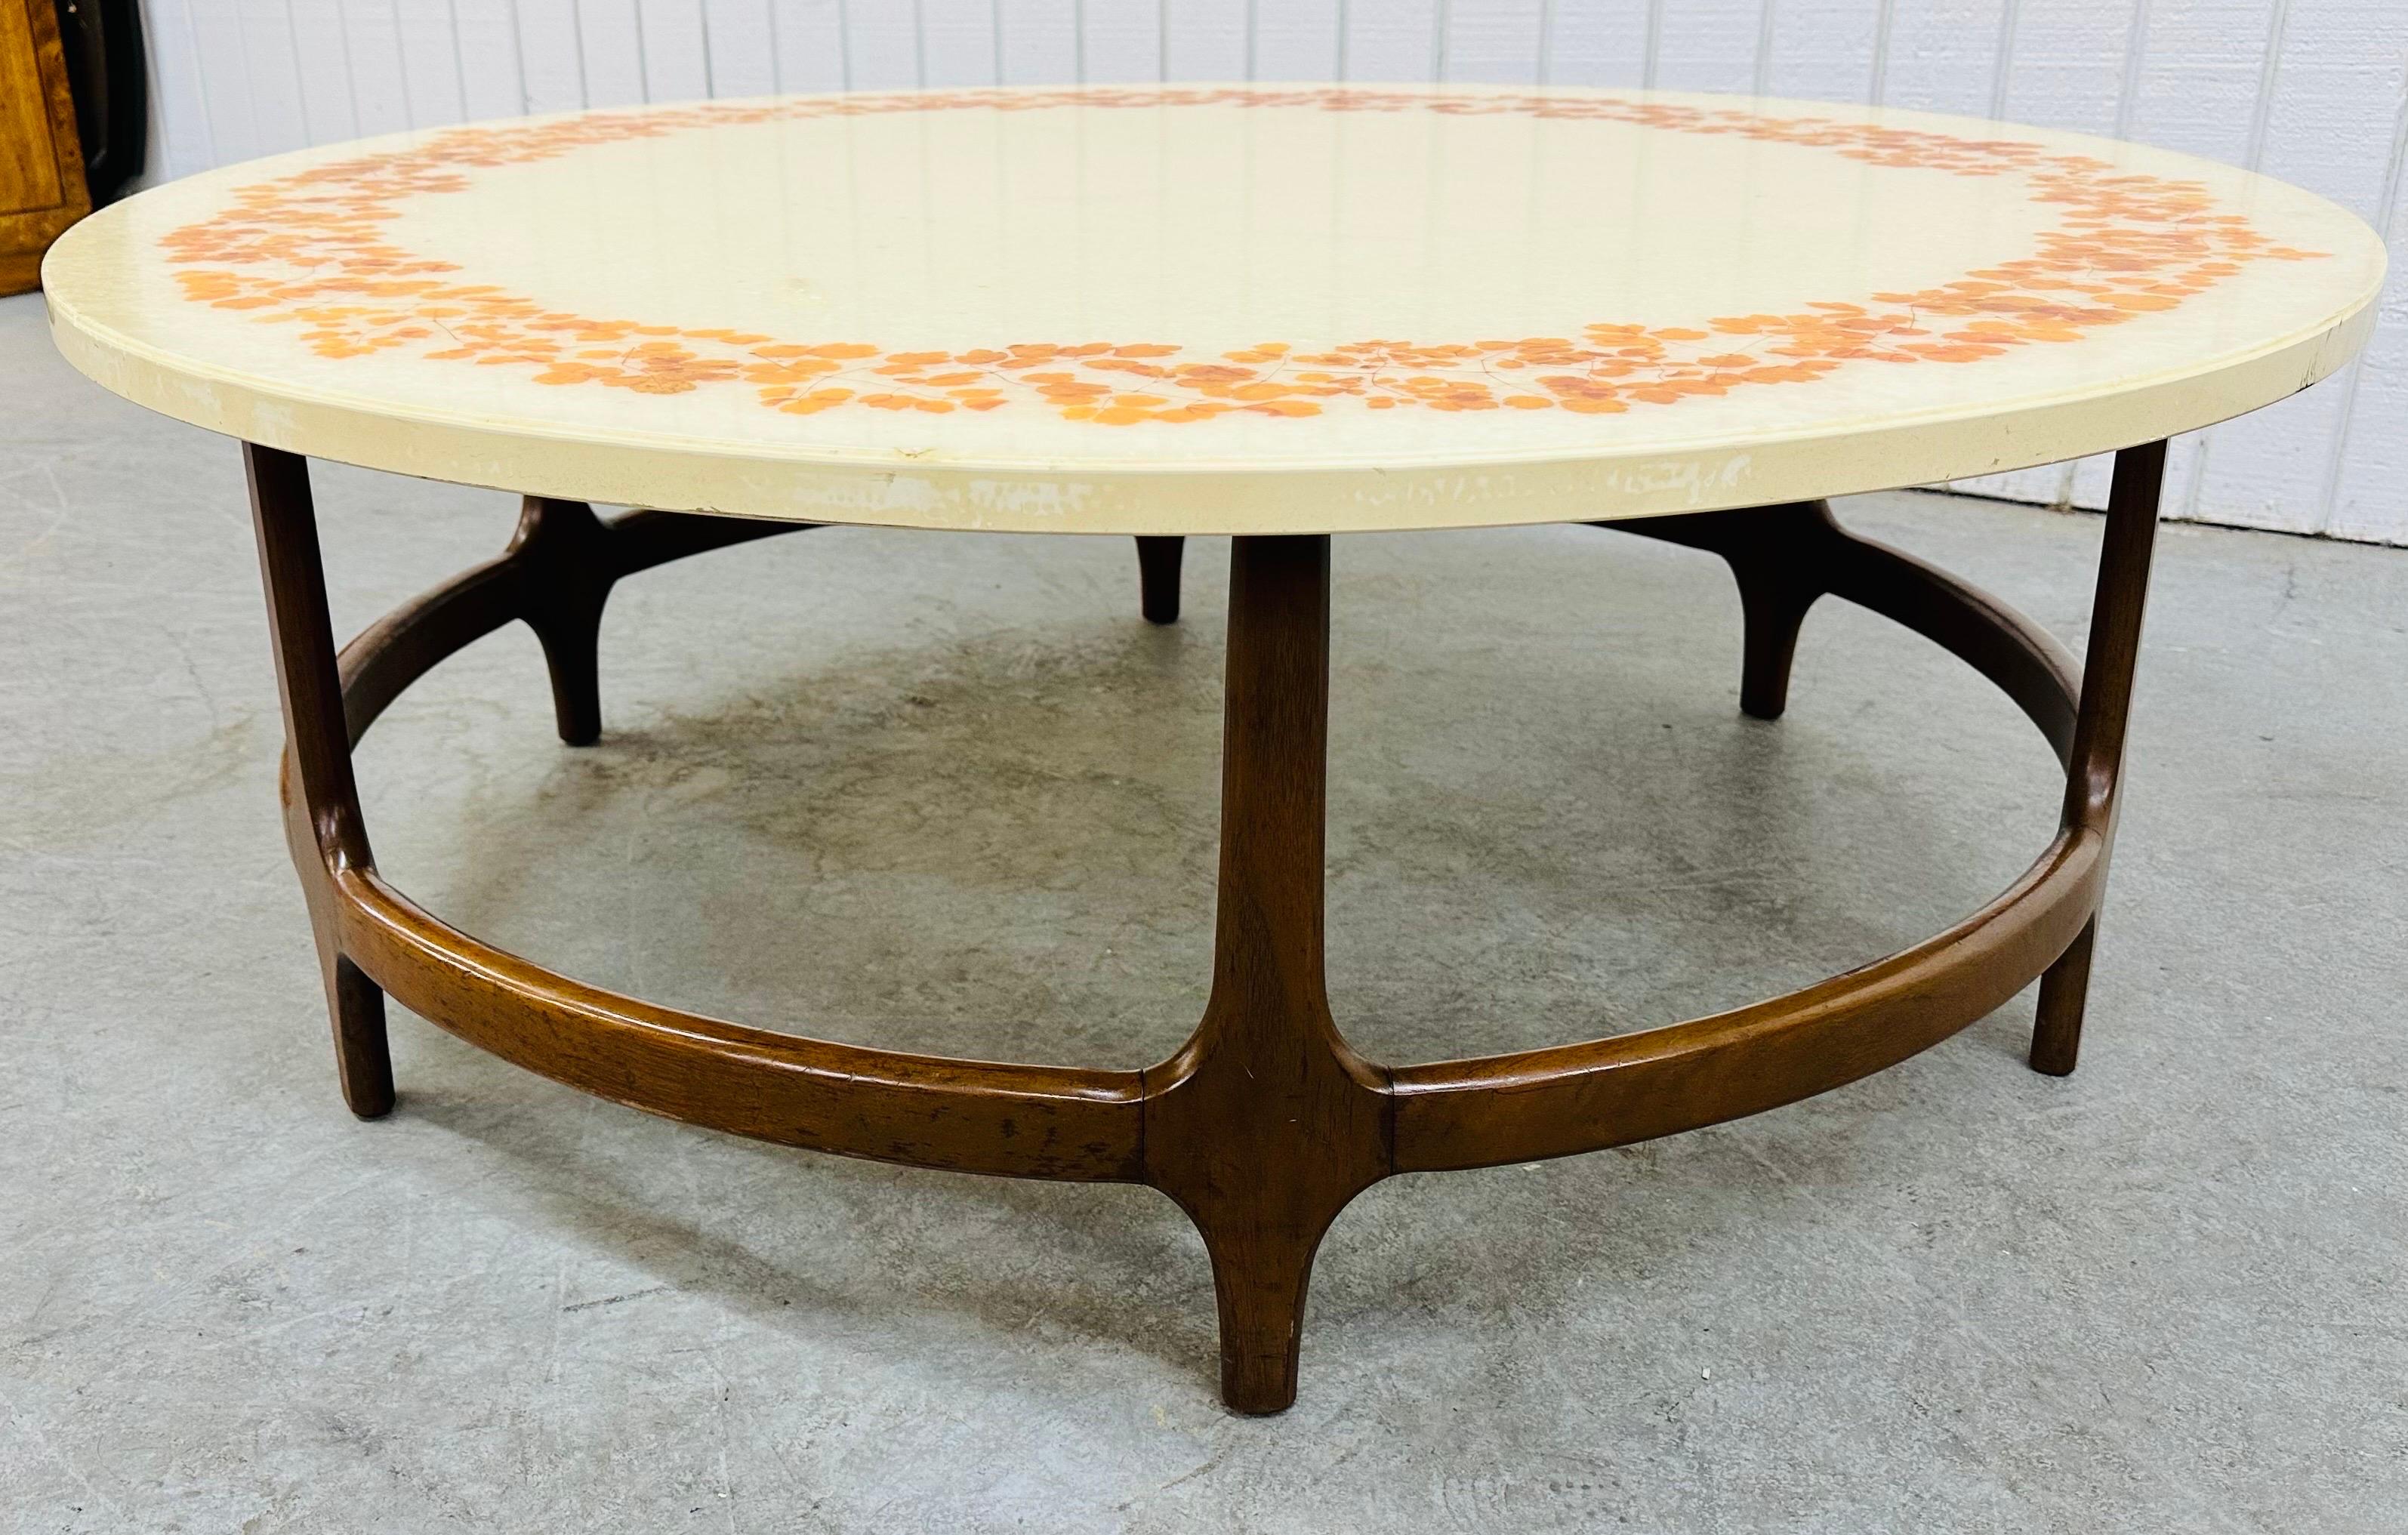 Diese Auflistung ist für eine Mid-Century Modern Runde dekorative Walnuss Couchtisch. Die runde Tischplatte mit dekorativen, glitzernden Blättern und der skulpturale Holzsockel sind mit einer schönen Walnussoberfläche versehen. Dies ist eine